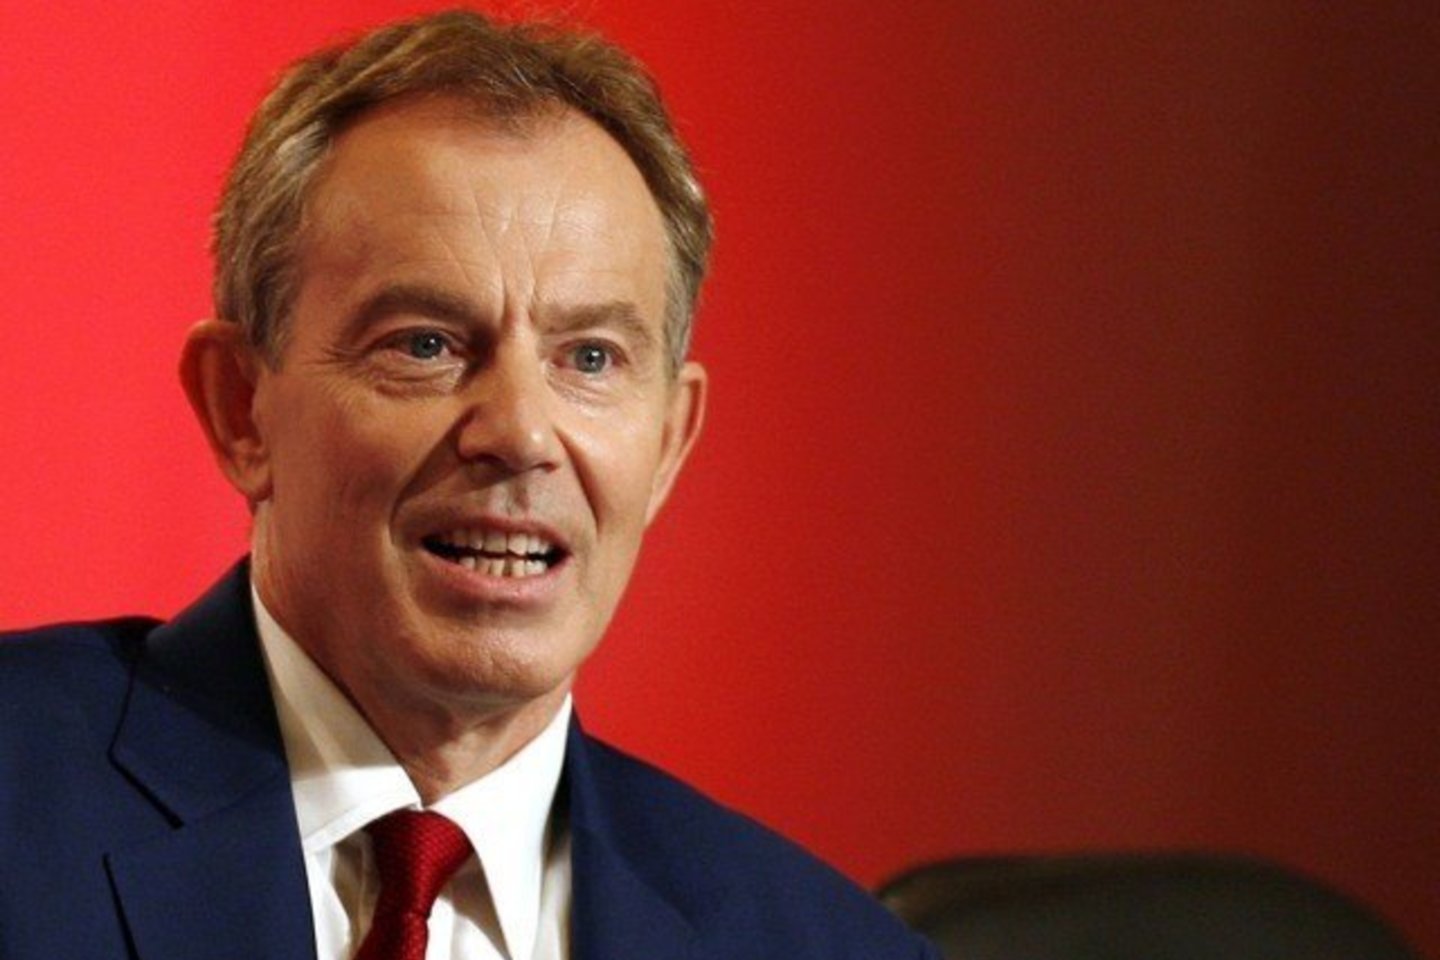 T. Blairas bandė plėtoti centristinę „naują leiboristų“ politiką ir ėmėsi aktyvaus vaidmens tarptautinėje arenoje, o tai ypač patiko britams ekonomikos augimo laikotarpiu. <br>"Reuters"